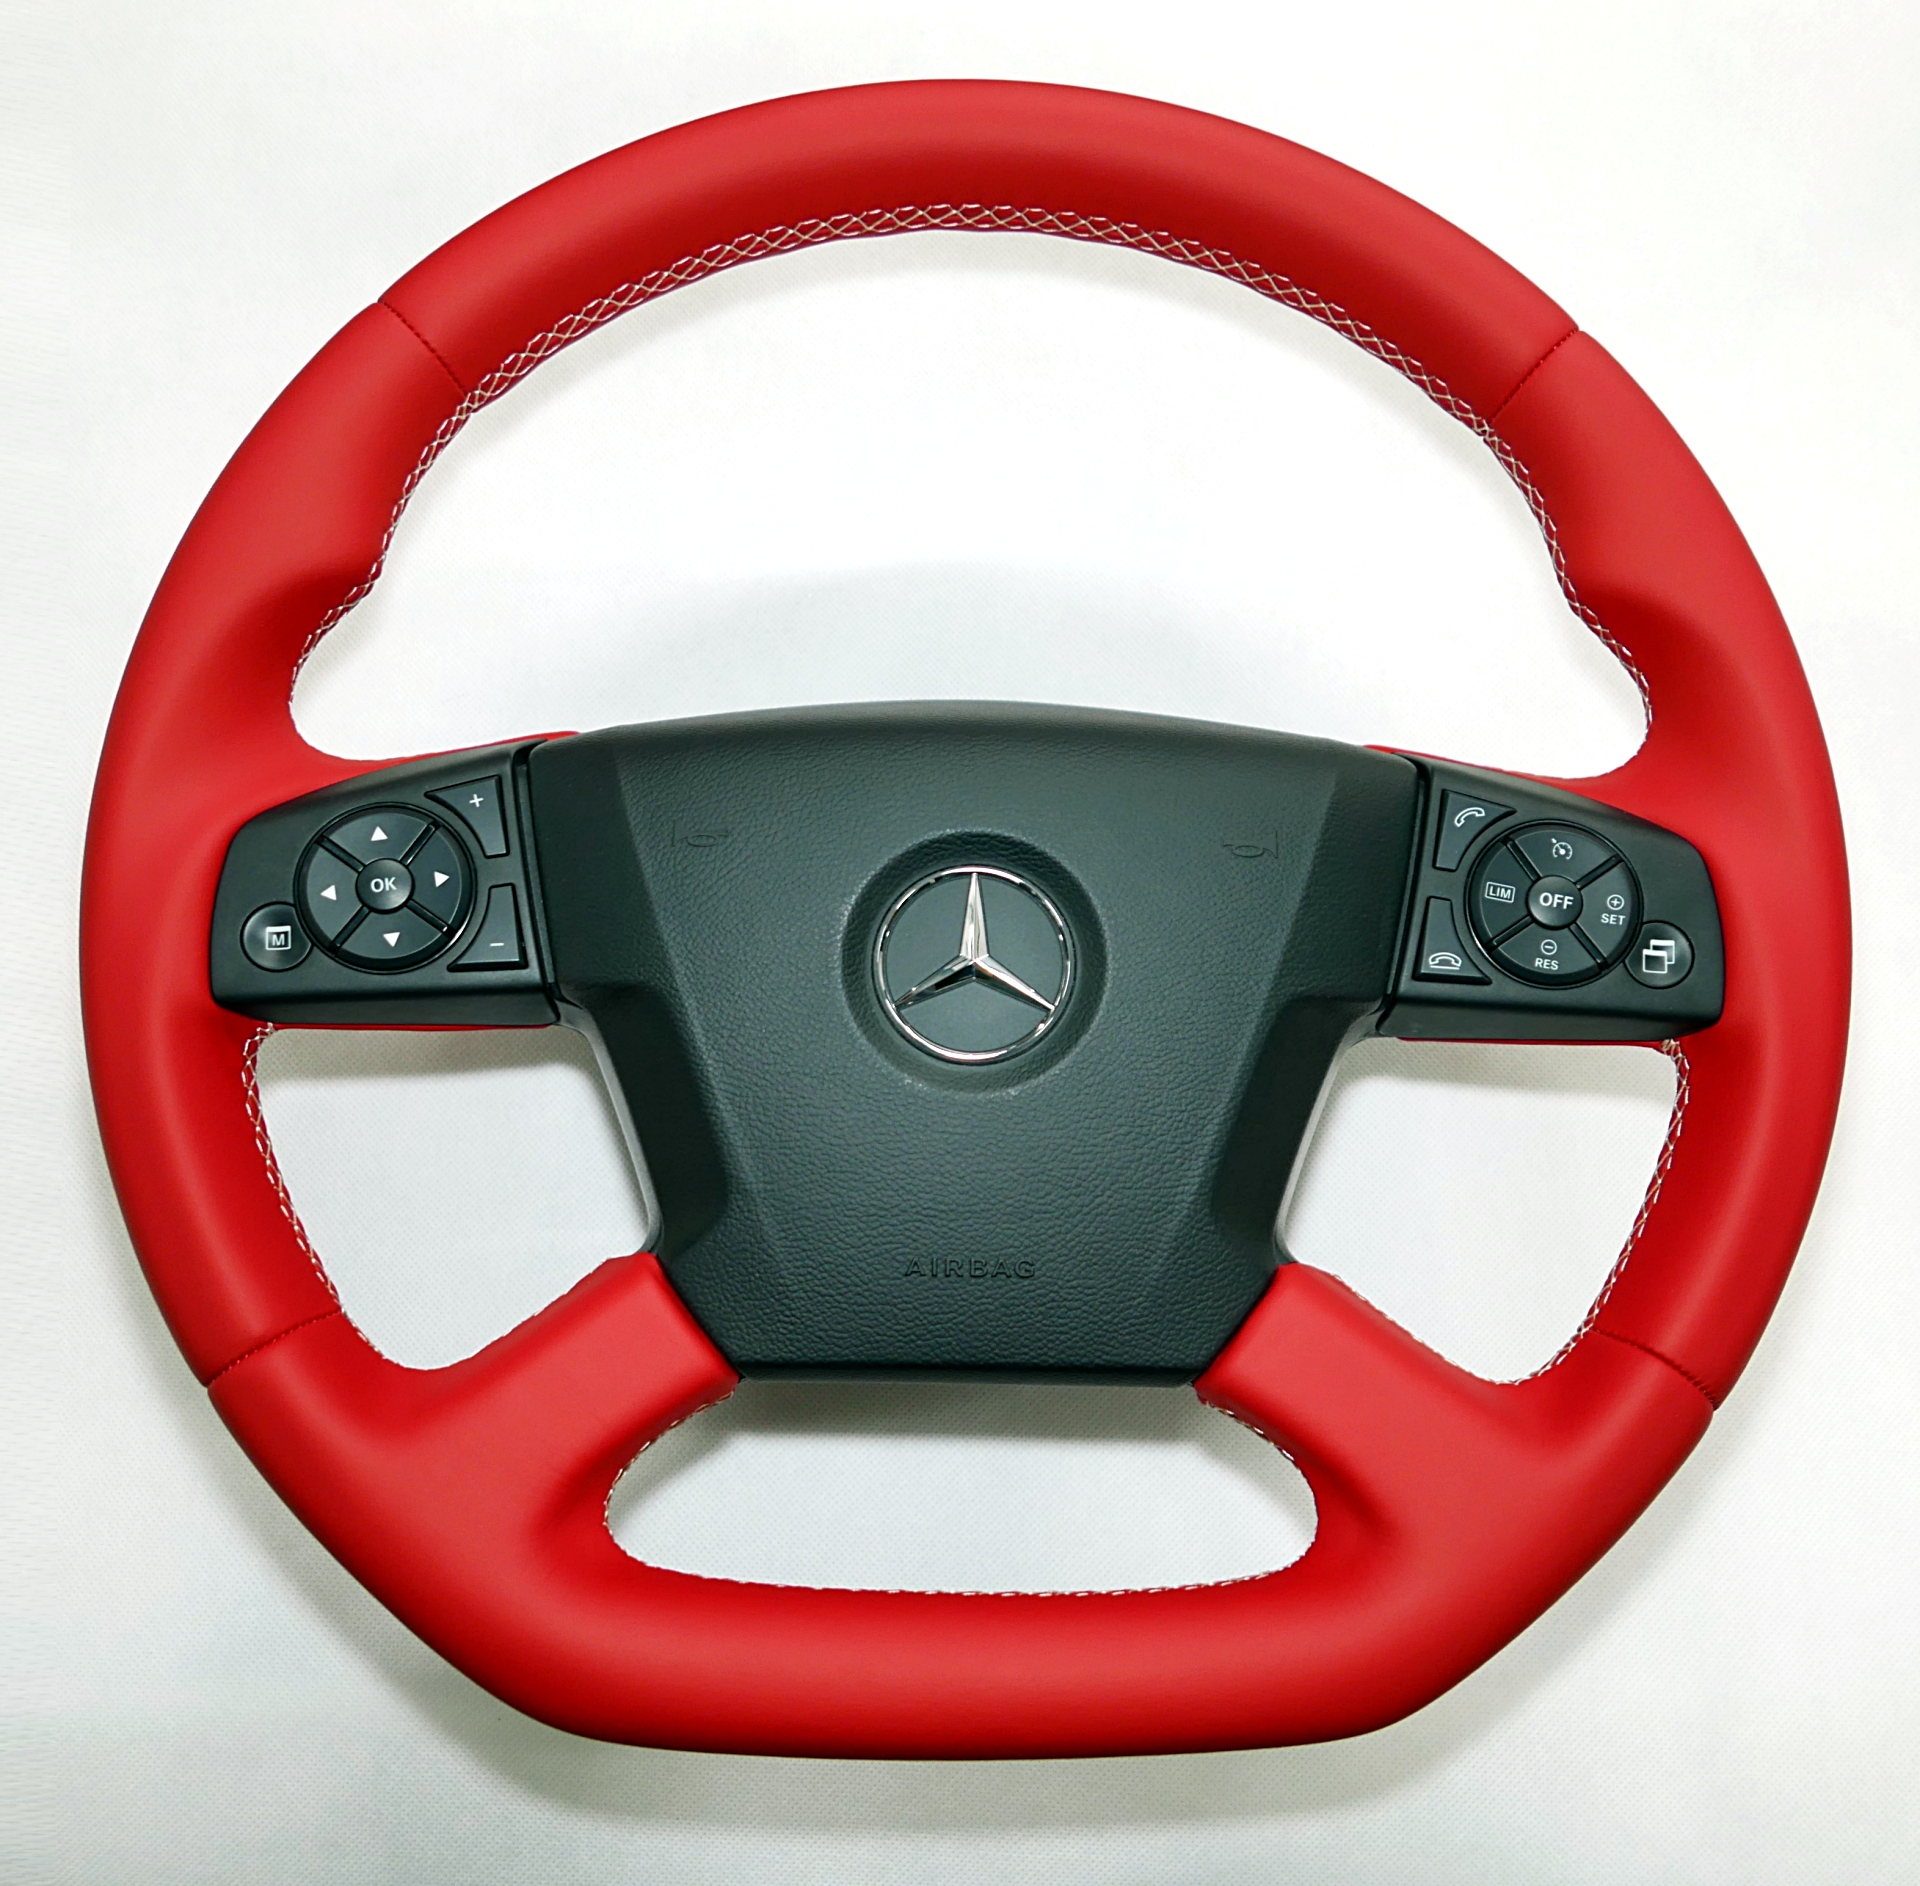 przebudowa zmiana kształtu kierownica Mercedes Actros